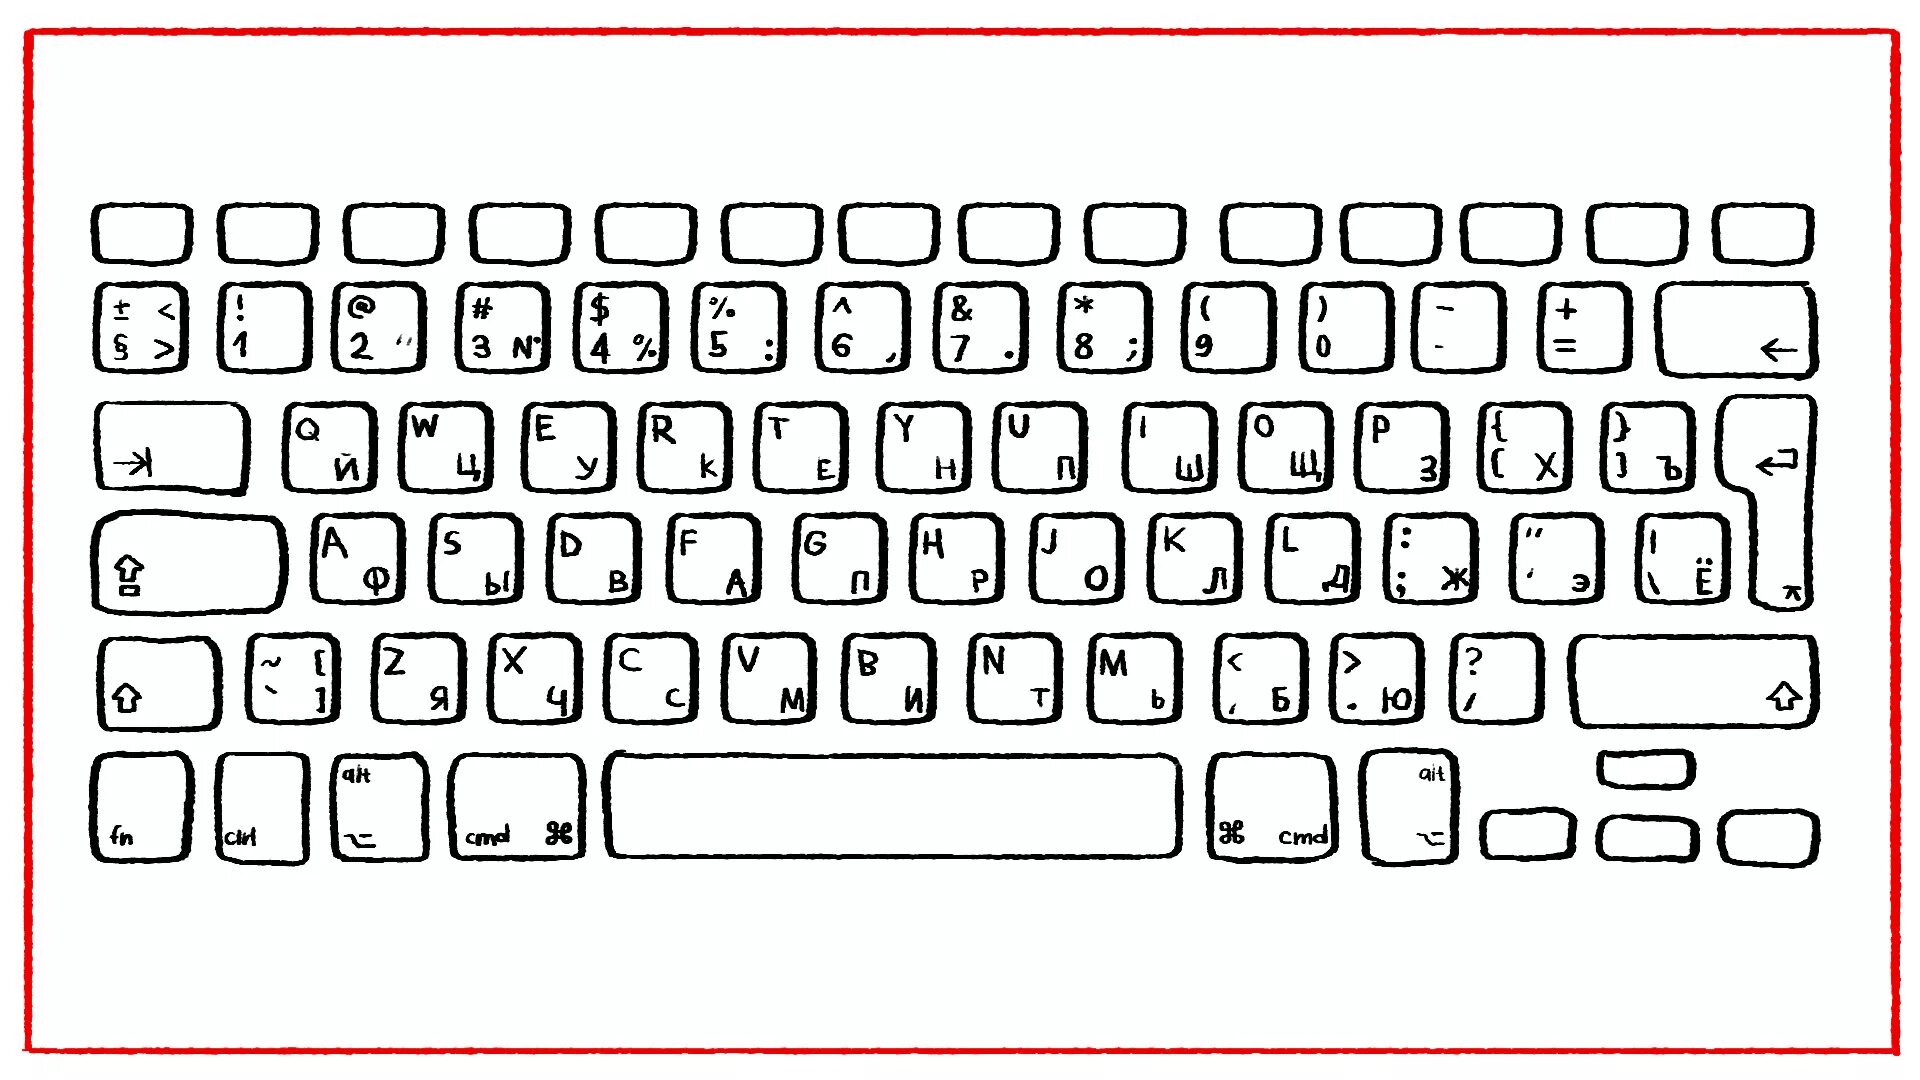 Компьютерная клавиатура раскладка русская и английская. Клавиатура раскраска. Распечатка клавиатуры компьютера. Клавиатура компьютера трафарет. Печатать русским на английский